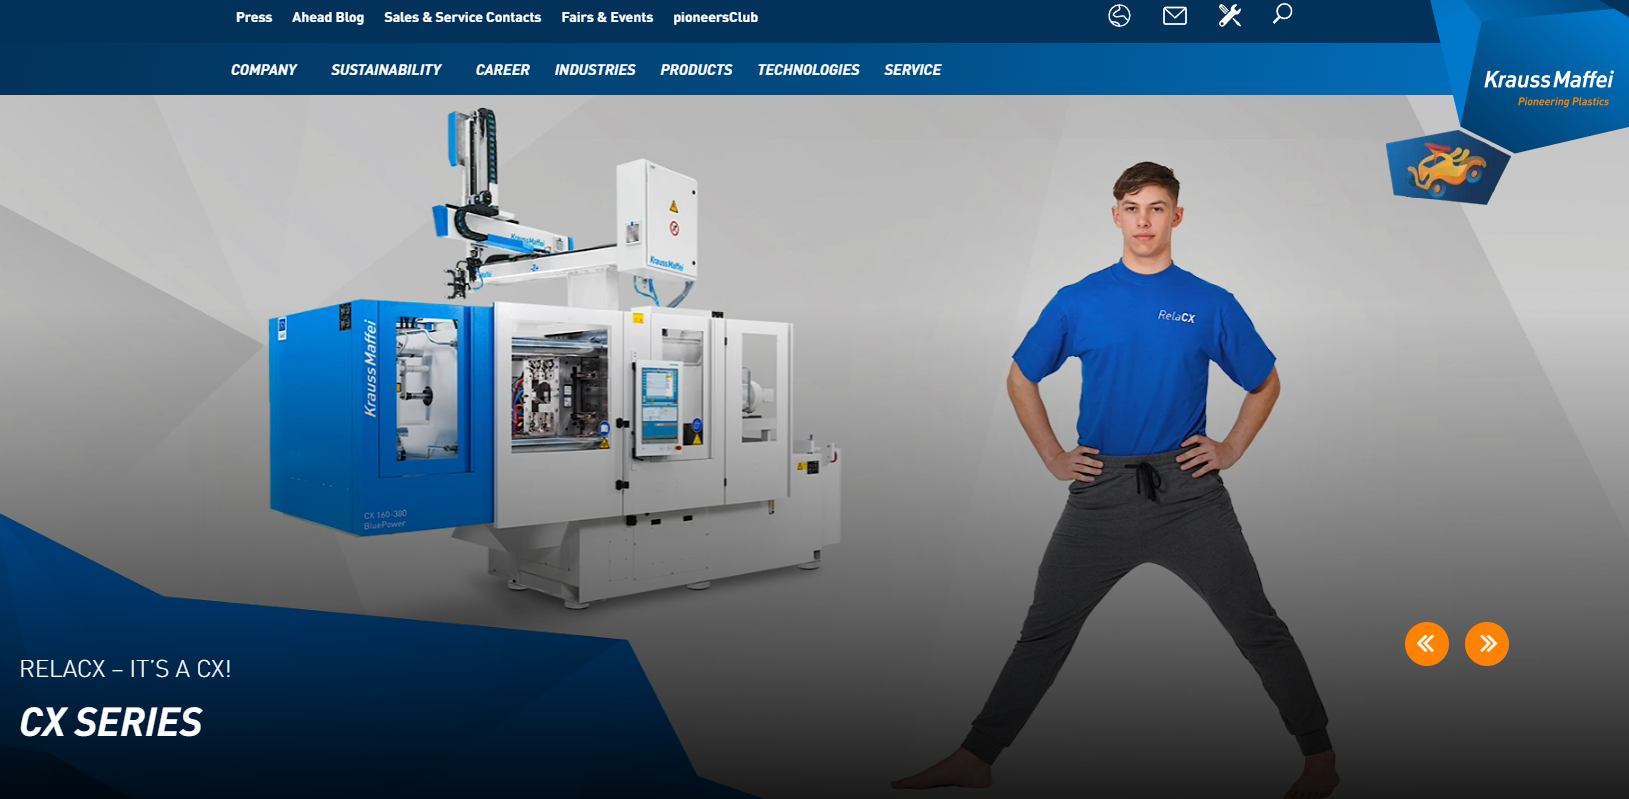 Krauss-Maffei Wegmann GmbH & Co. KG_manufacturers of injection molding machines